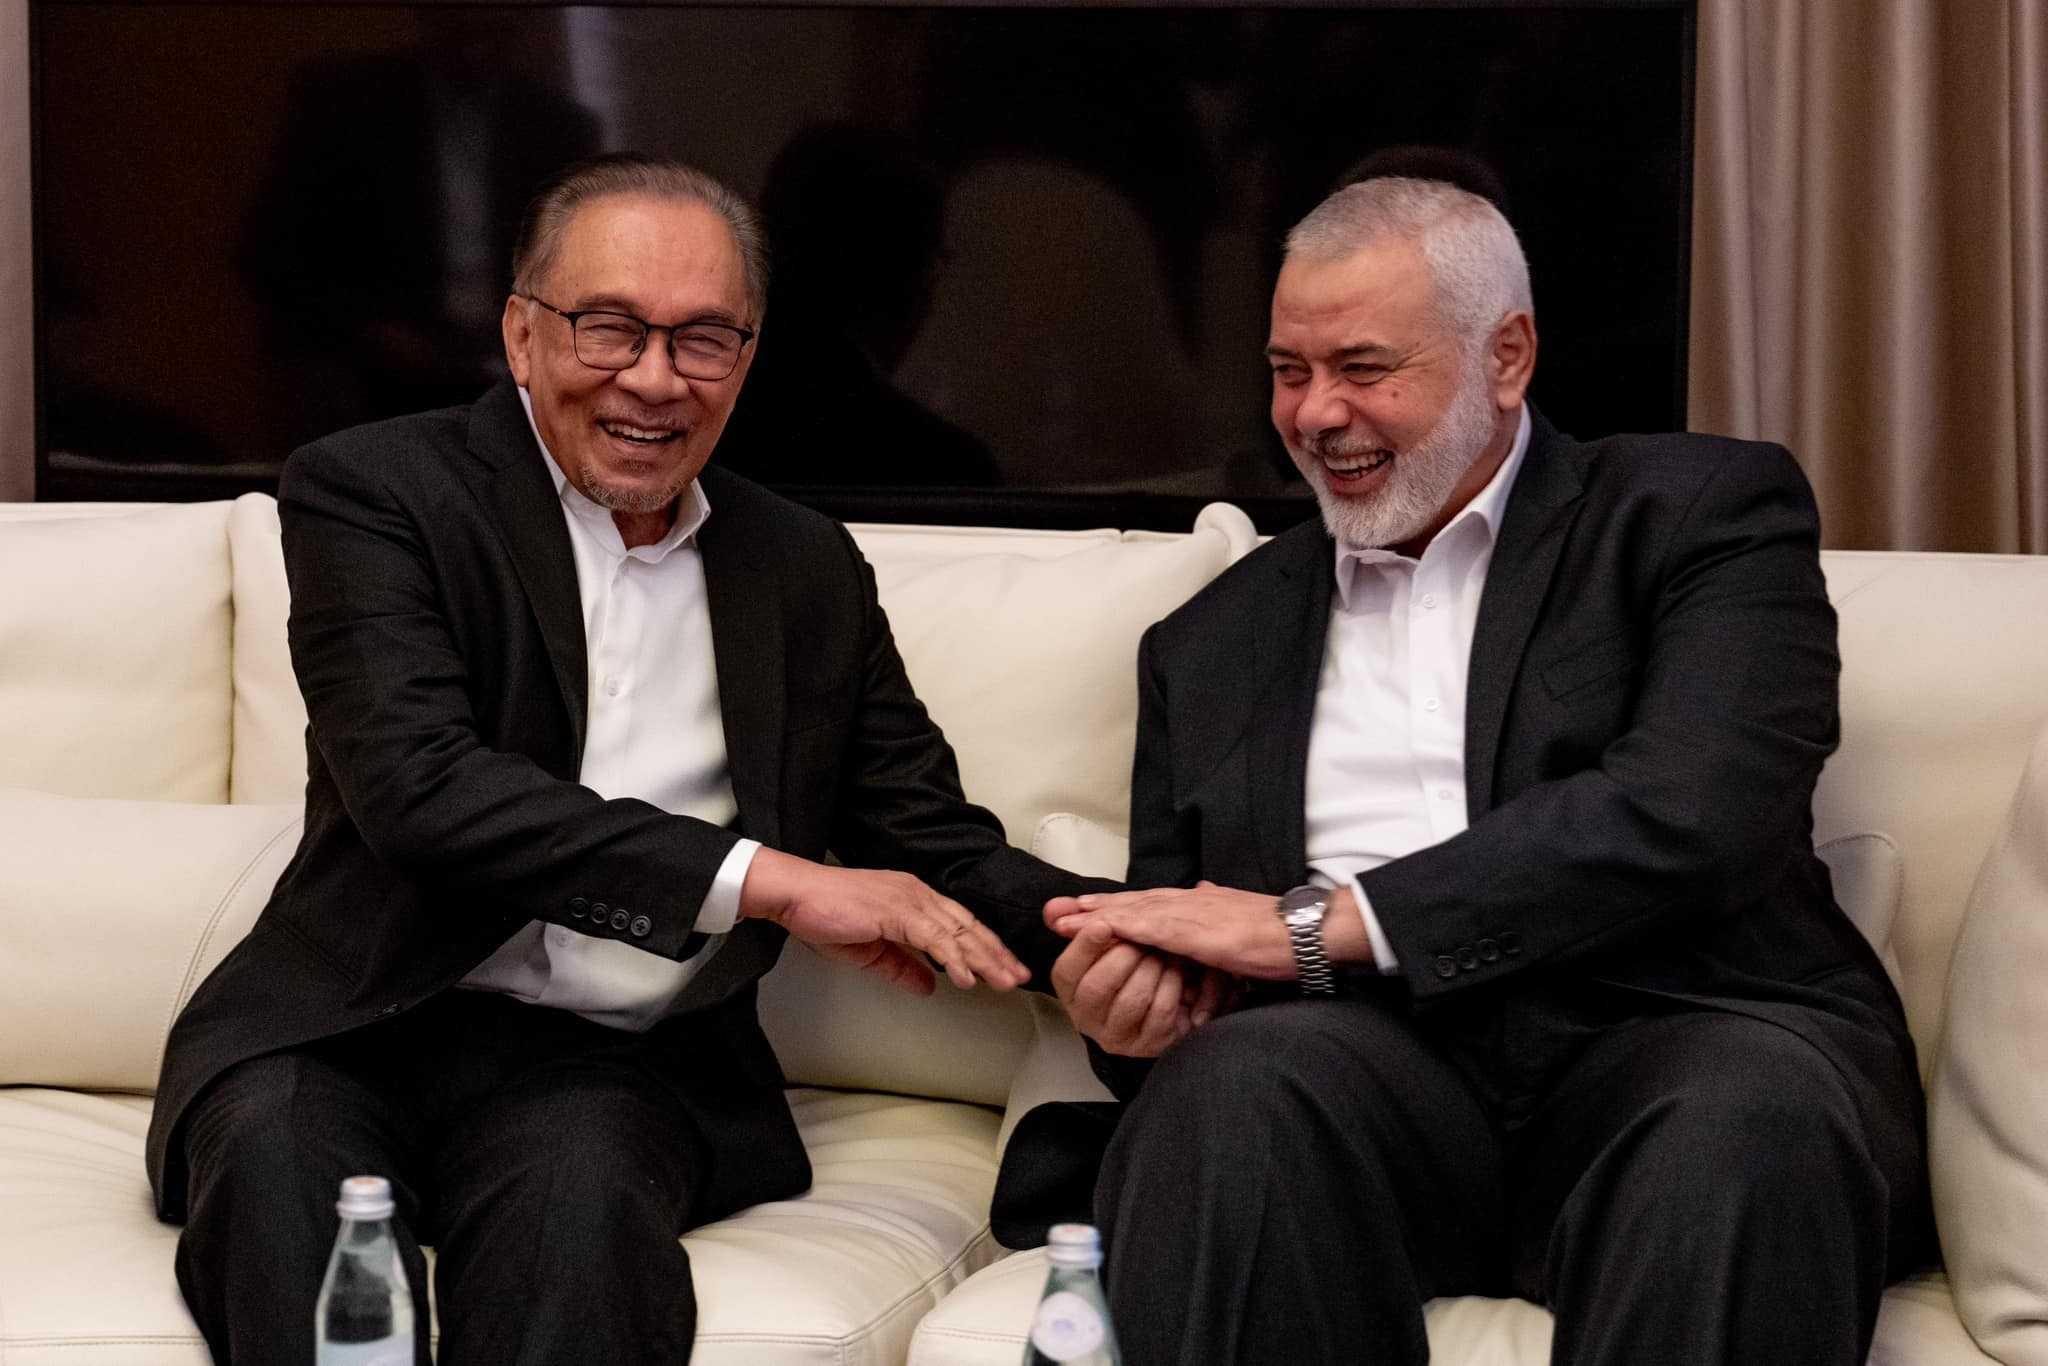 Perdana Menteri Anwar Ibrahim, dilihat dalam pertemuannya dengan ketua biro politik Hamas Ismail Haniyeh di Qatar bulan lepas, mendakwa beliau pernah berbincang dengan kumpulan itu mengenai urusan Malaysia dengan syarikat berkepentingan di Israel.